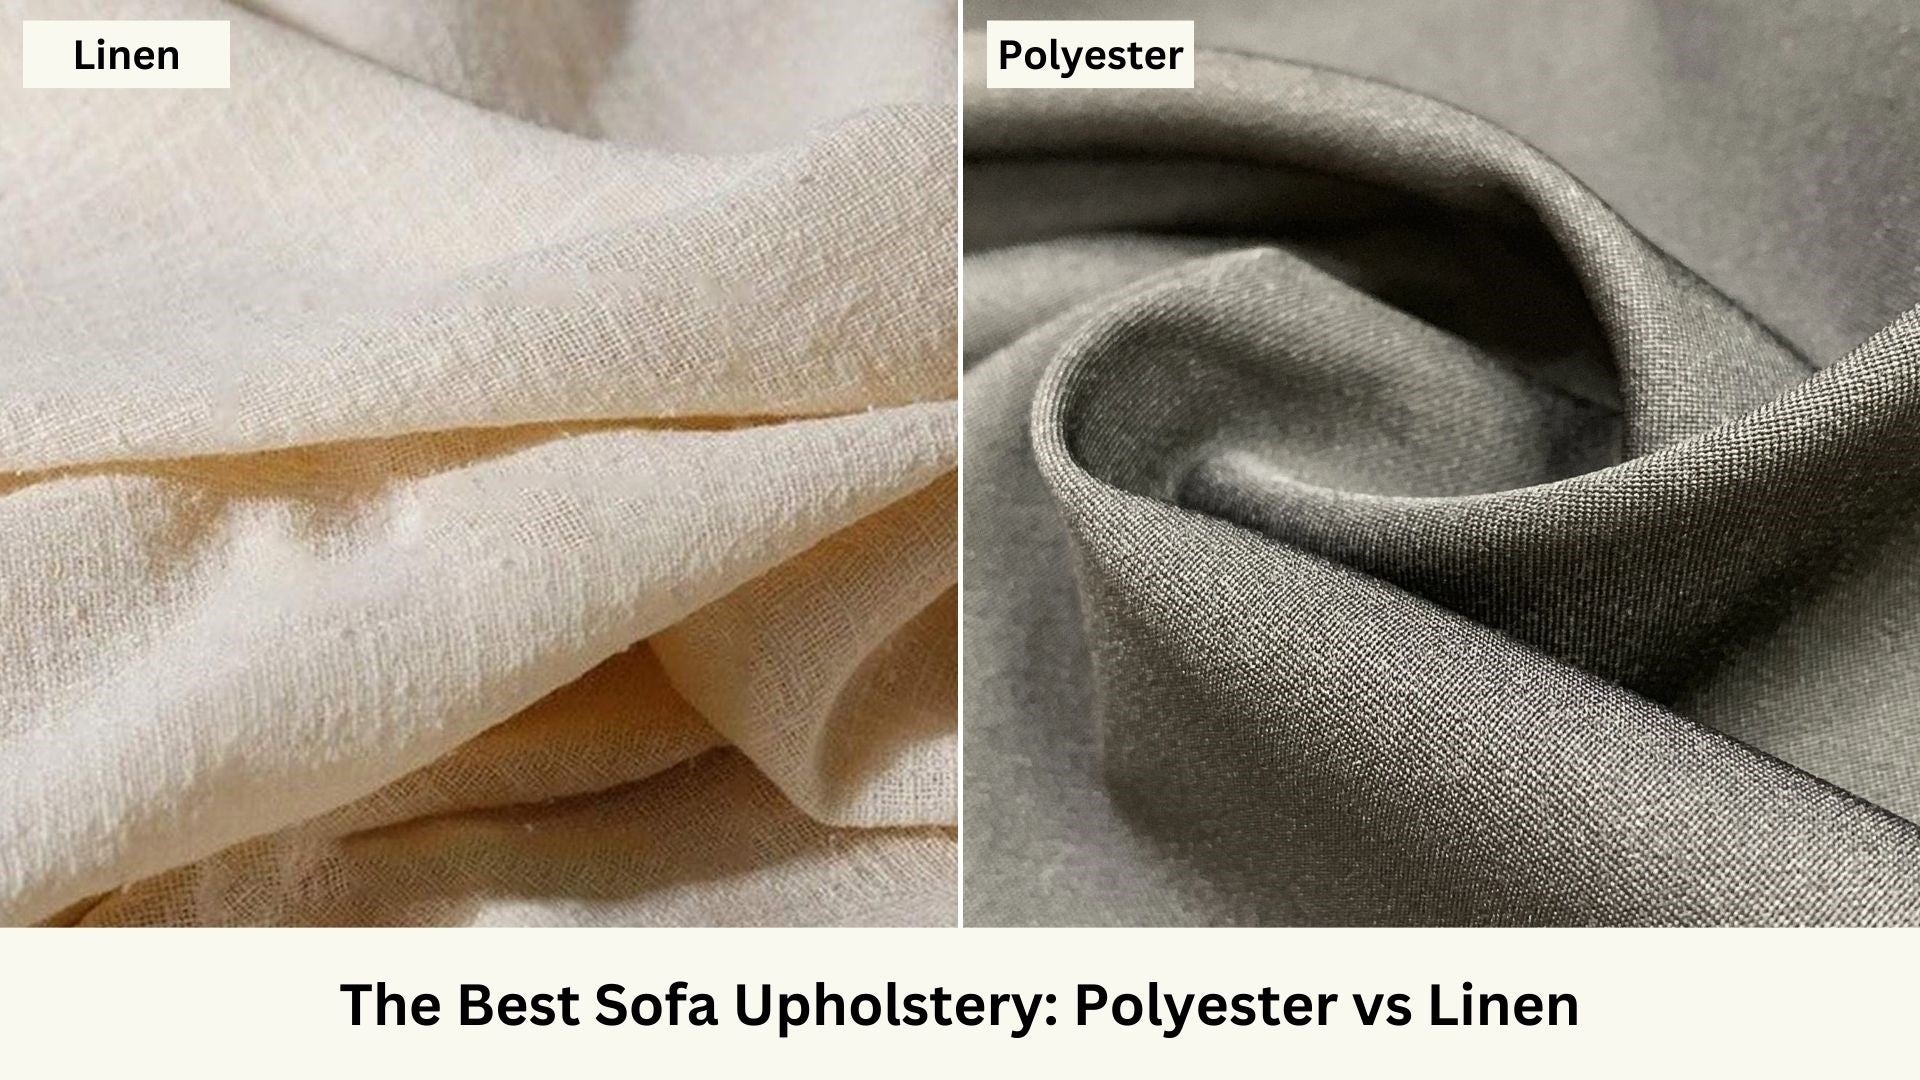 The Best Sofa Upholstery: Polyester vs Linen